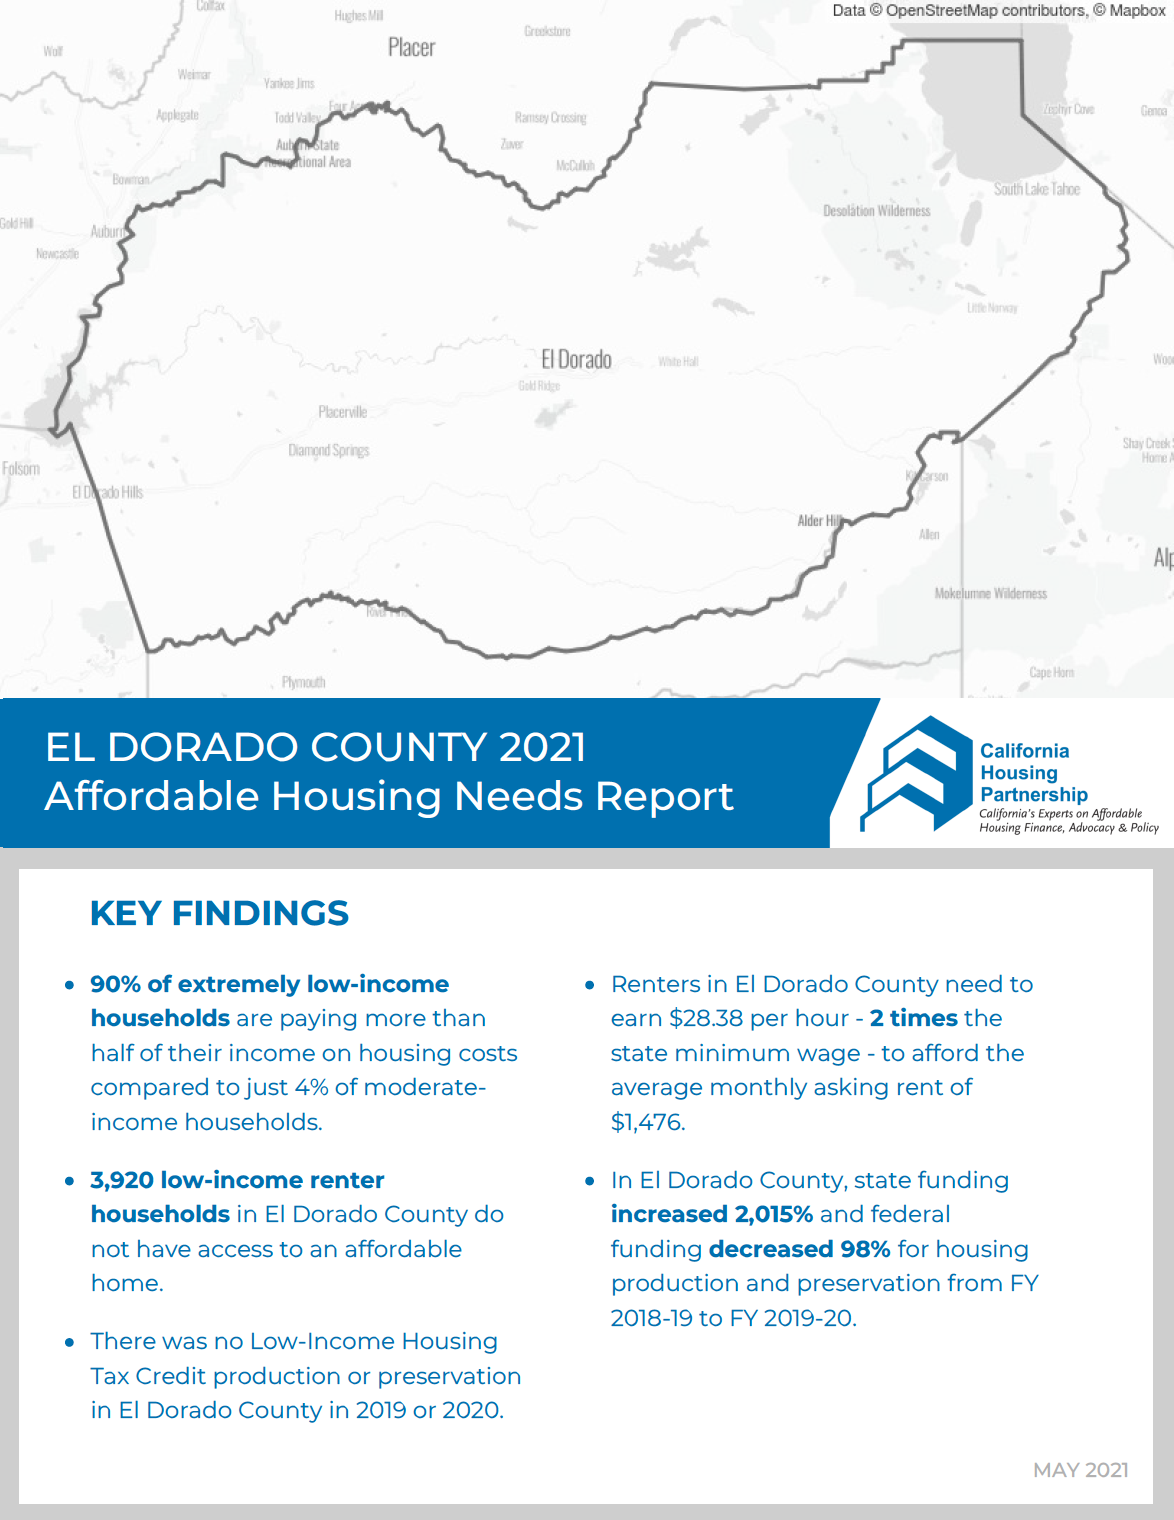 El Dorado County Housing Needs Report cover